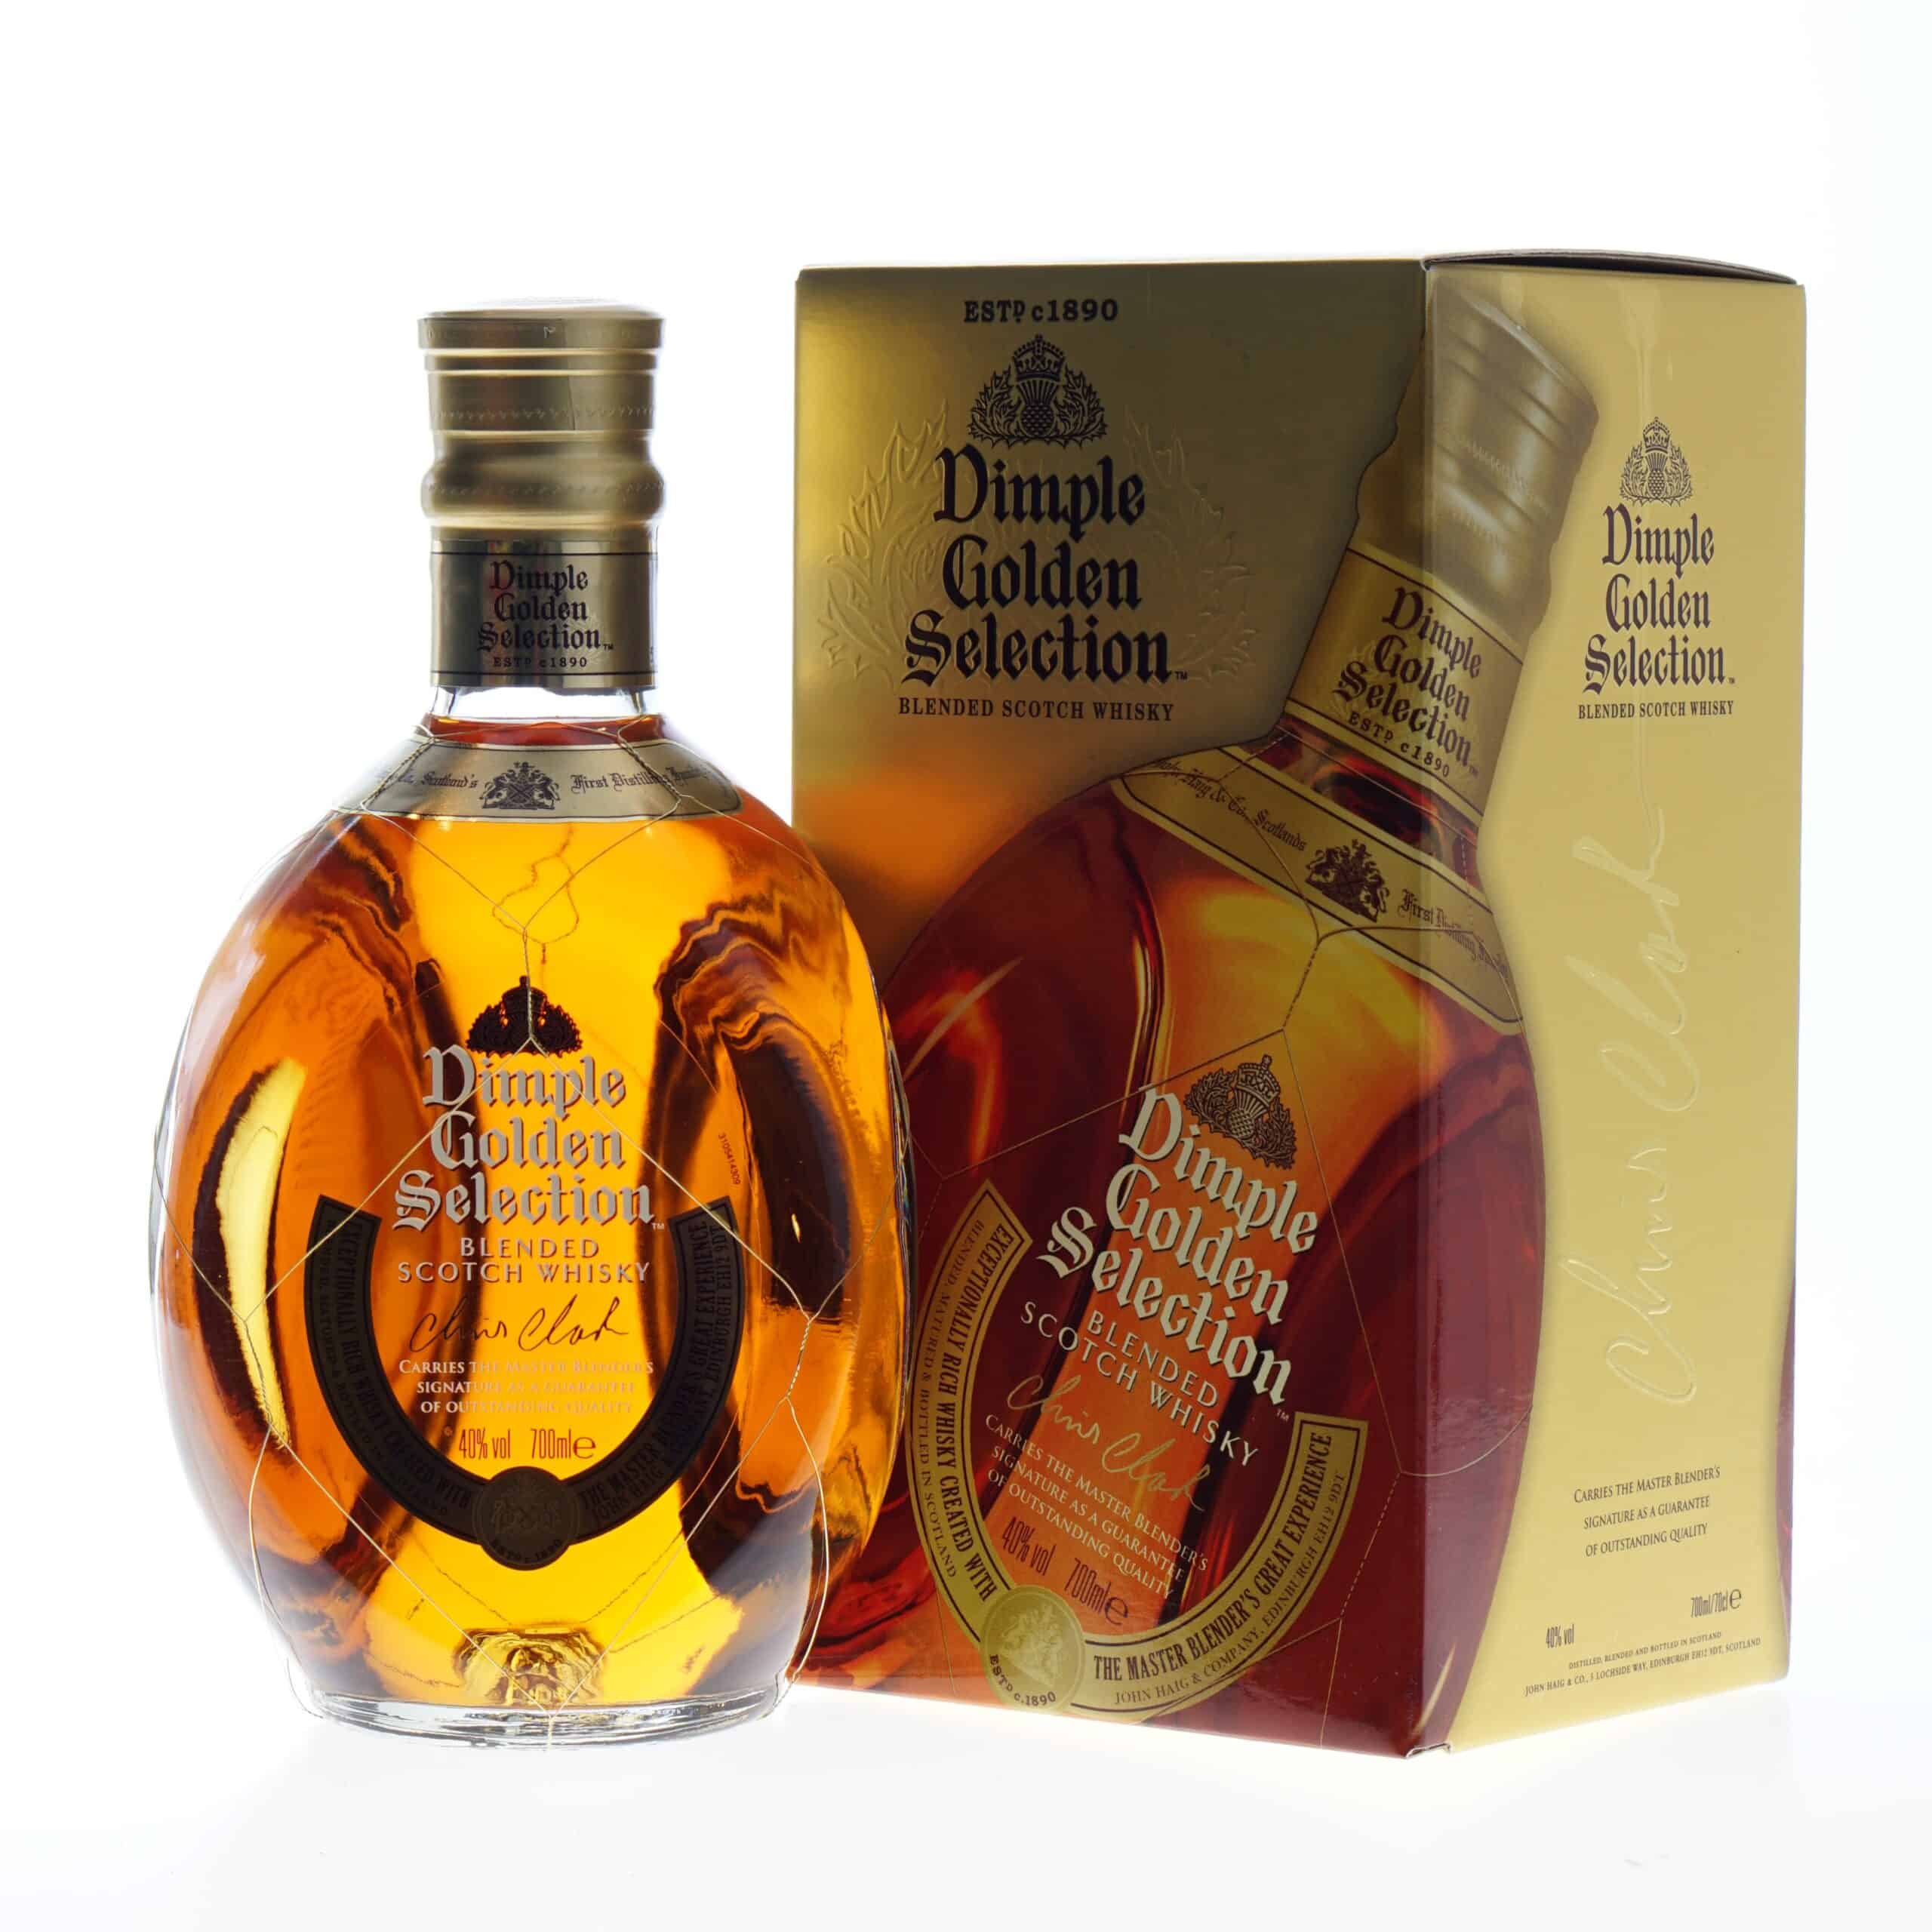 Dimple Whisky Golden Vidra 70cl » Slijterij Selection 40